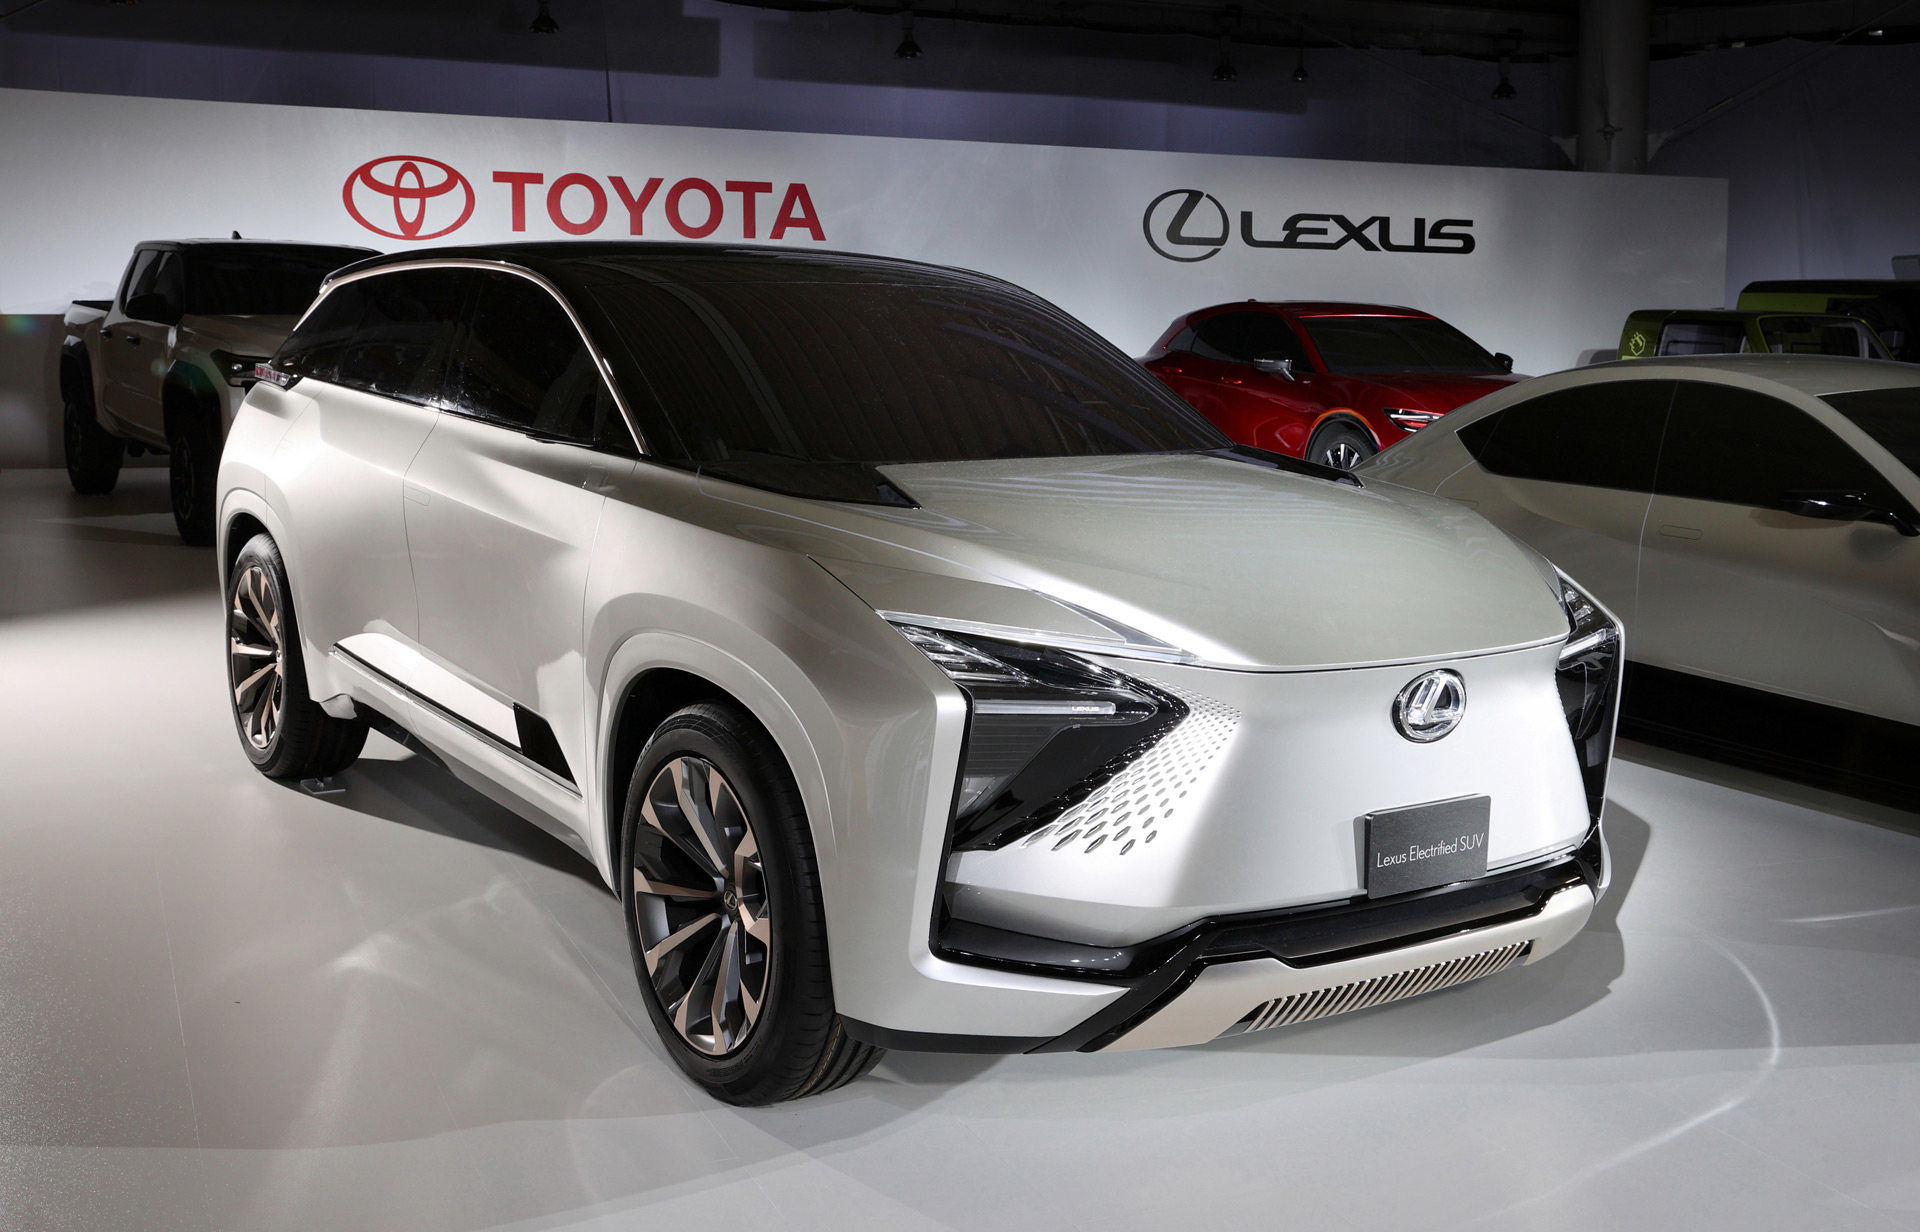 Lexus sắp ra mắt SUV 7 chỗ hoàn toàn mới, to ngang LX 600 quen thuộc với người Việt